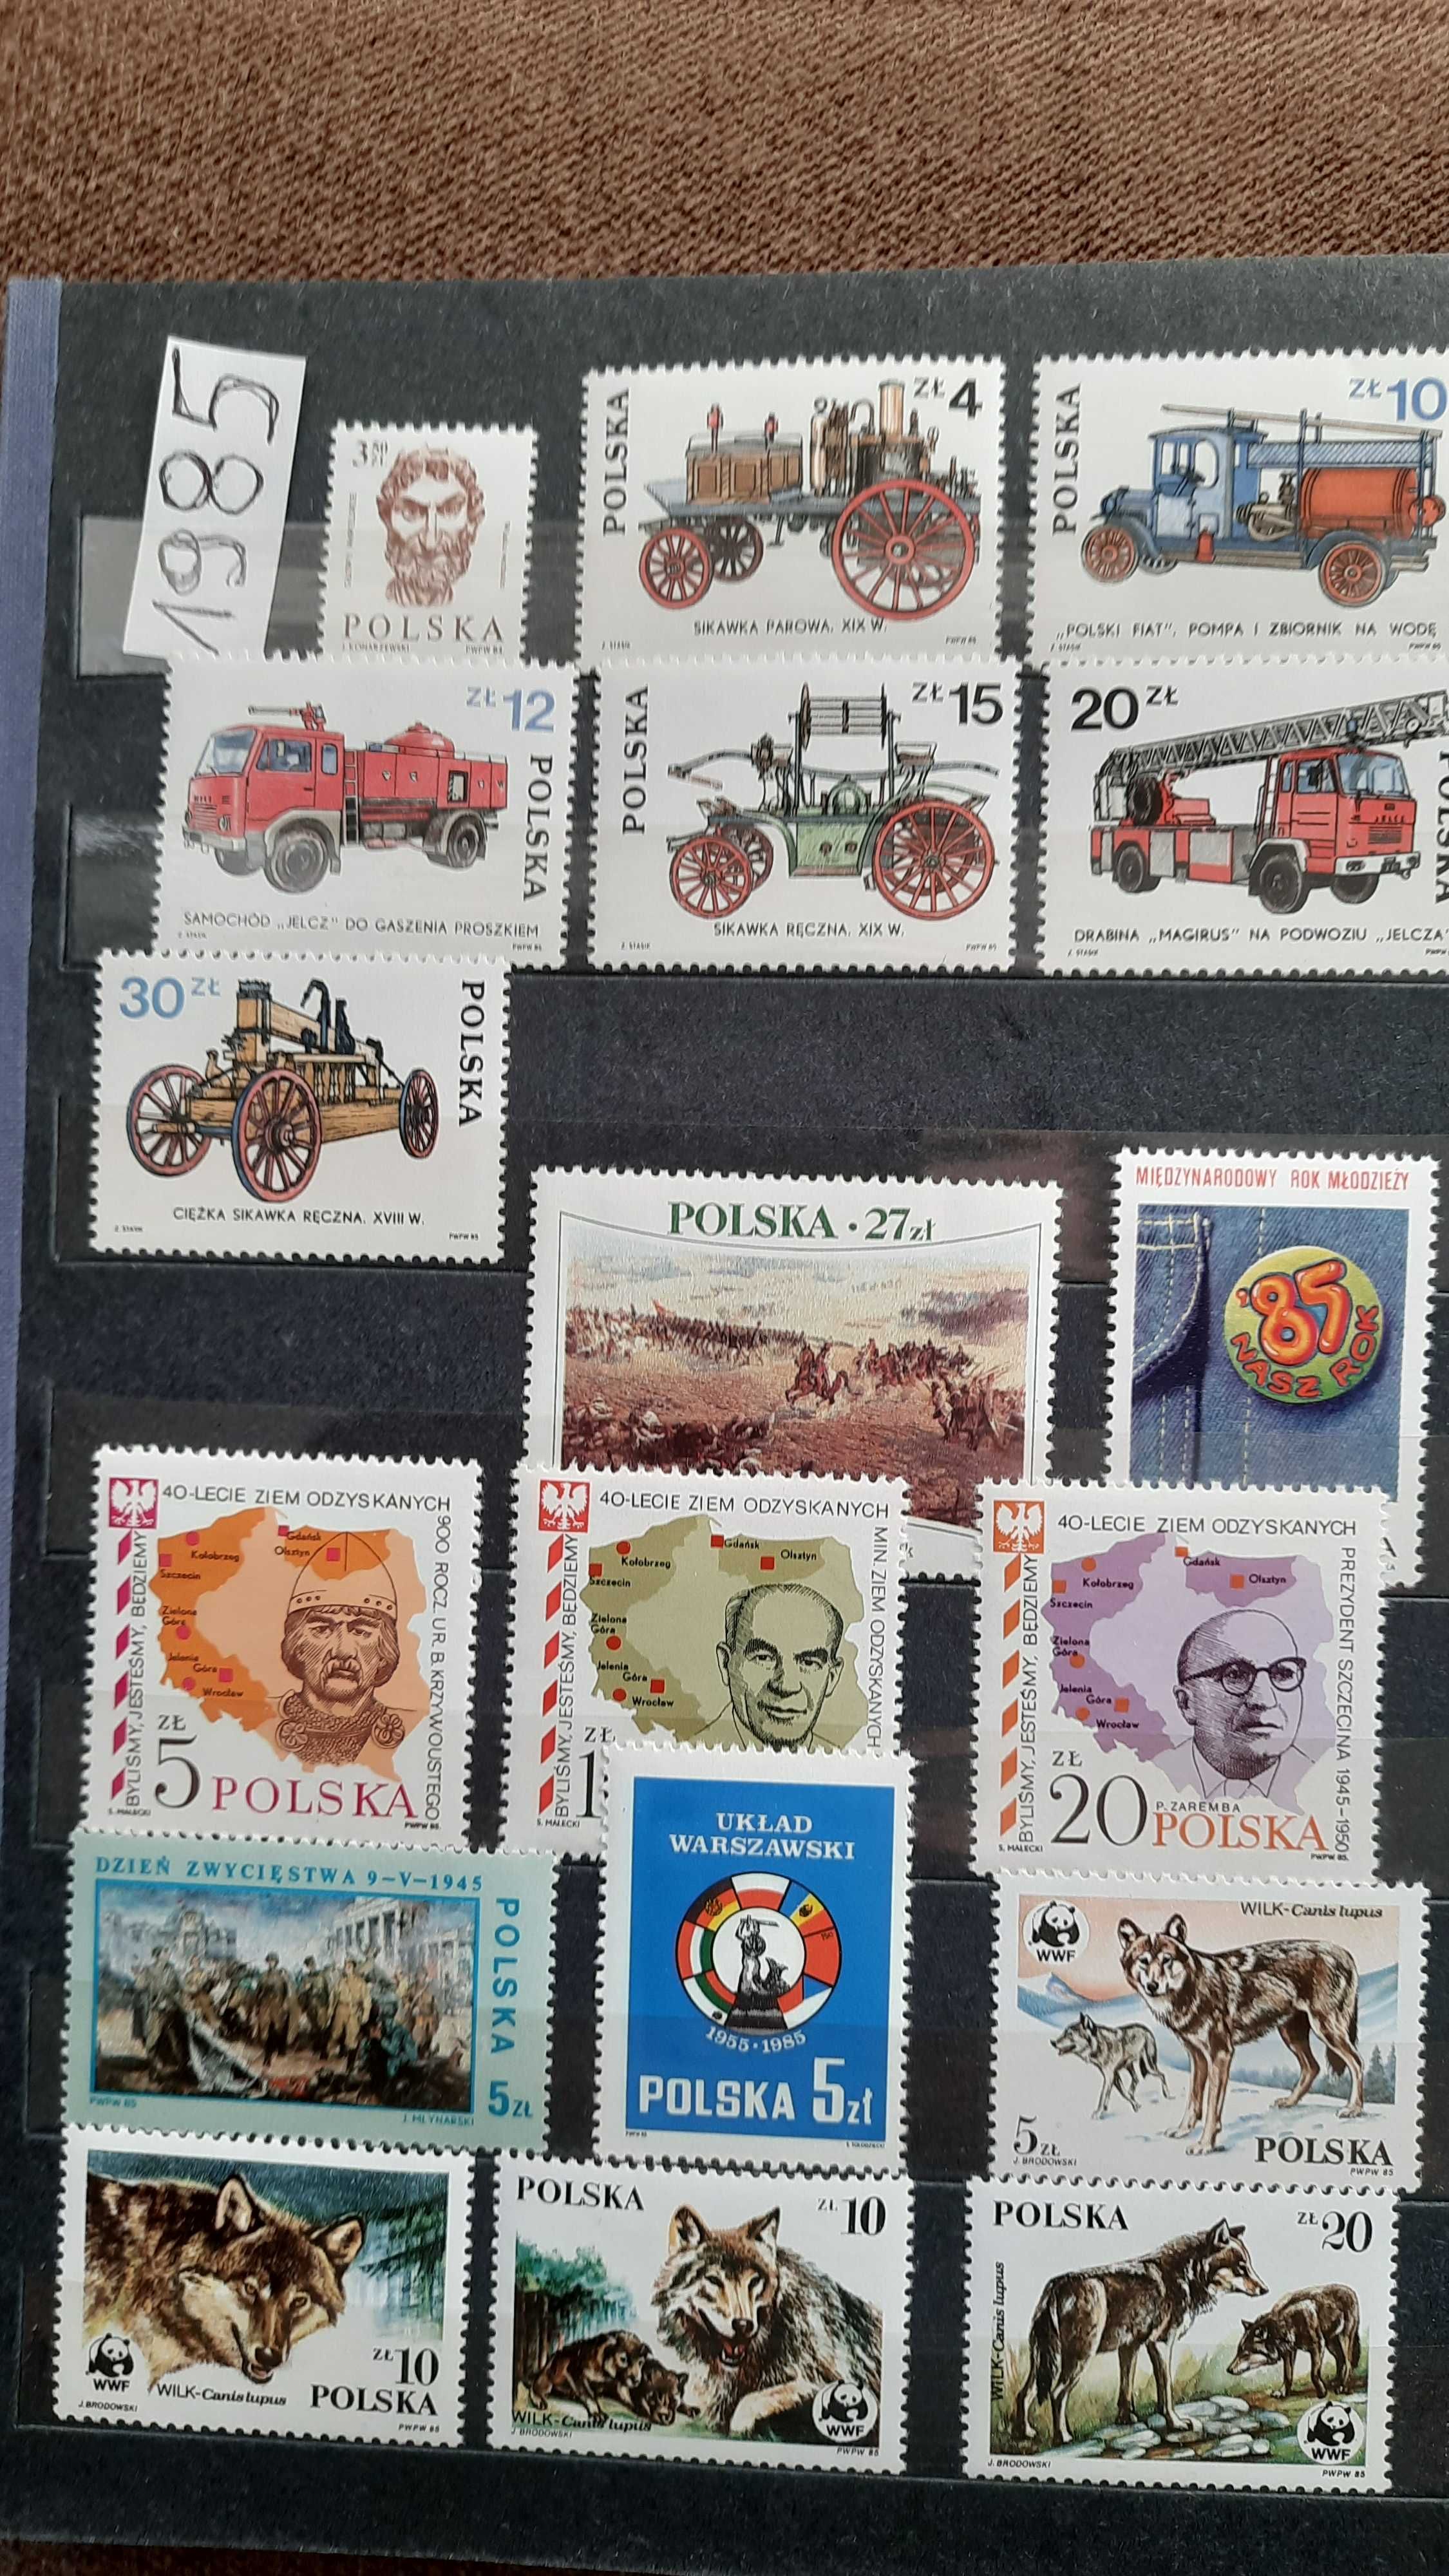 Znaczki pocztowe Polskie ** z 1985 roku.